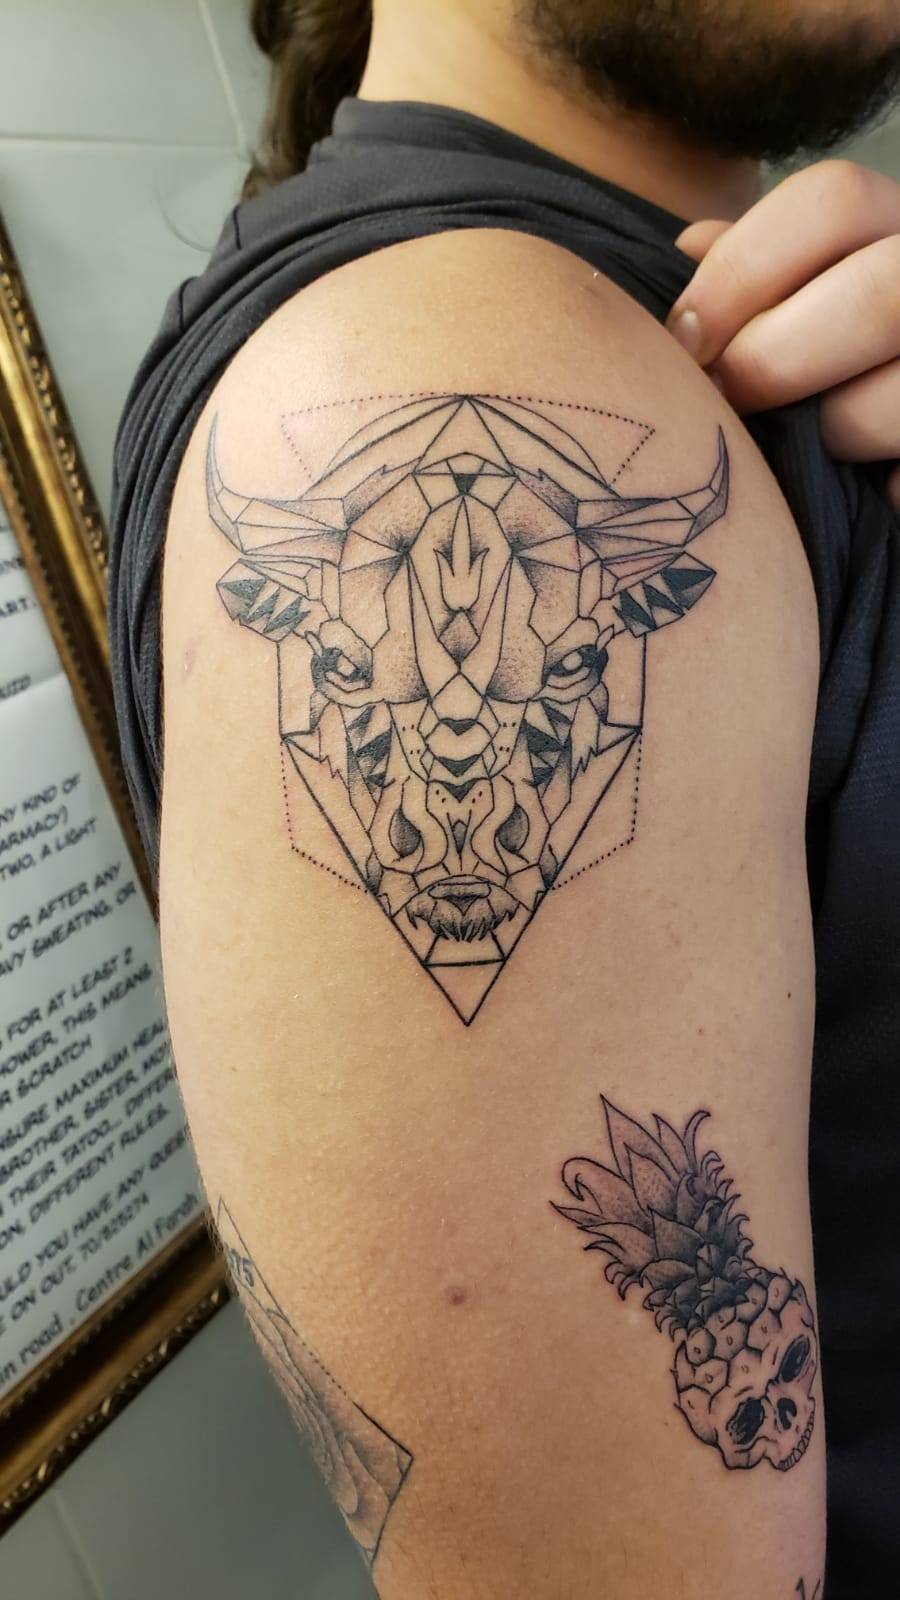 Hellhound Tattoos - Geometric Bull Tattoo by Artist Jayde Maddeline Tattoos  Photo by Byron Rhoda | Facebook